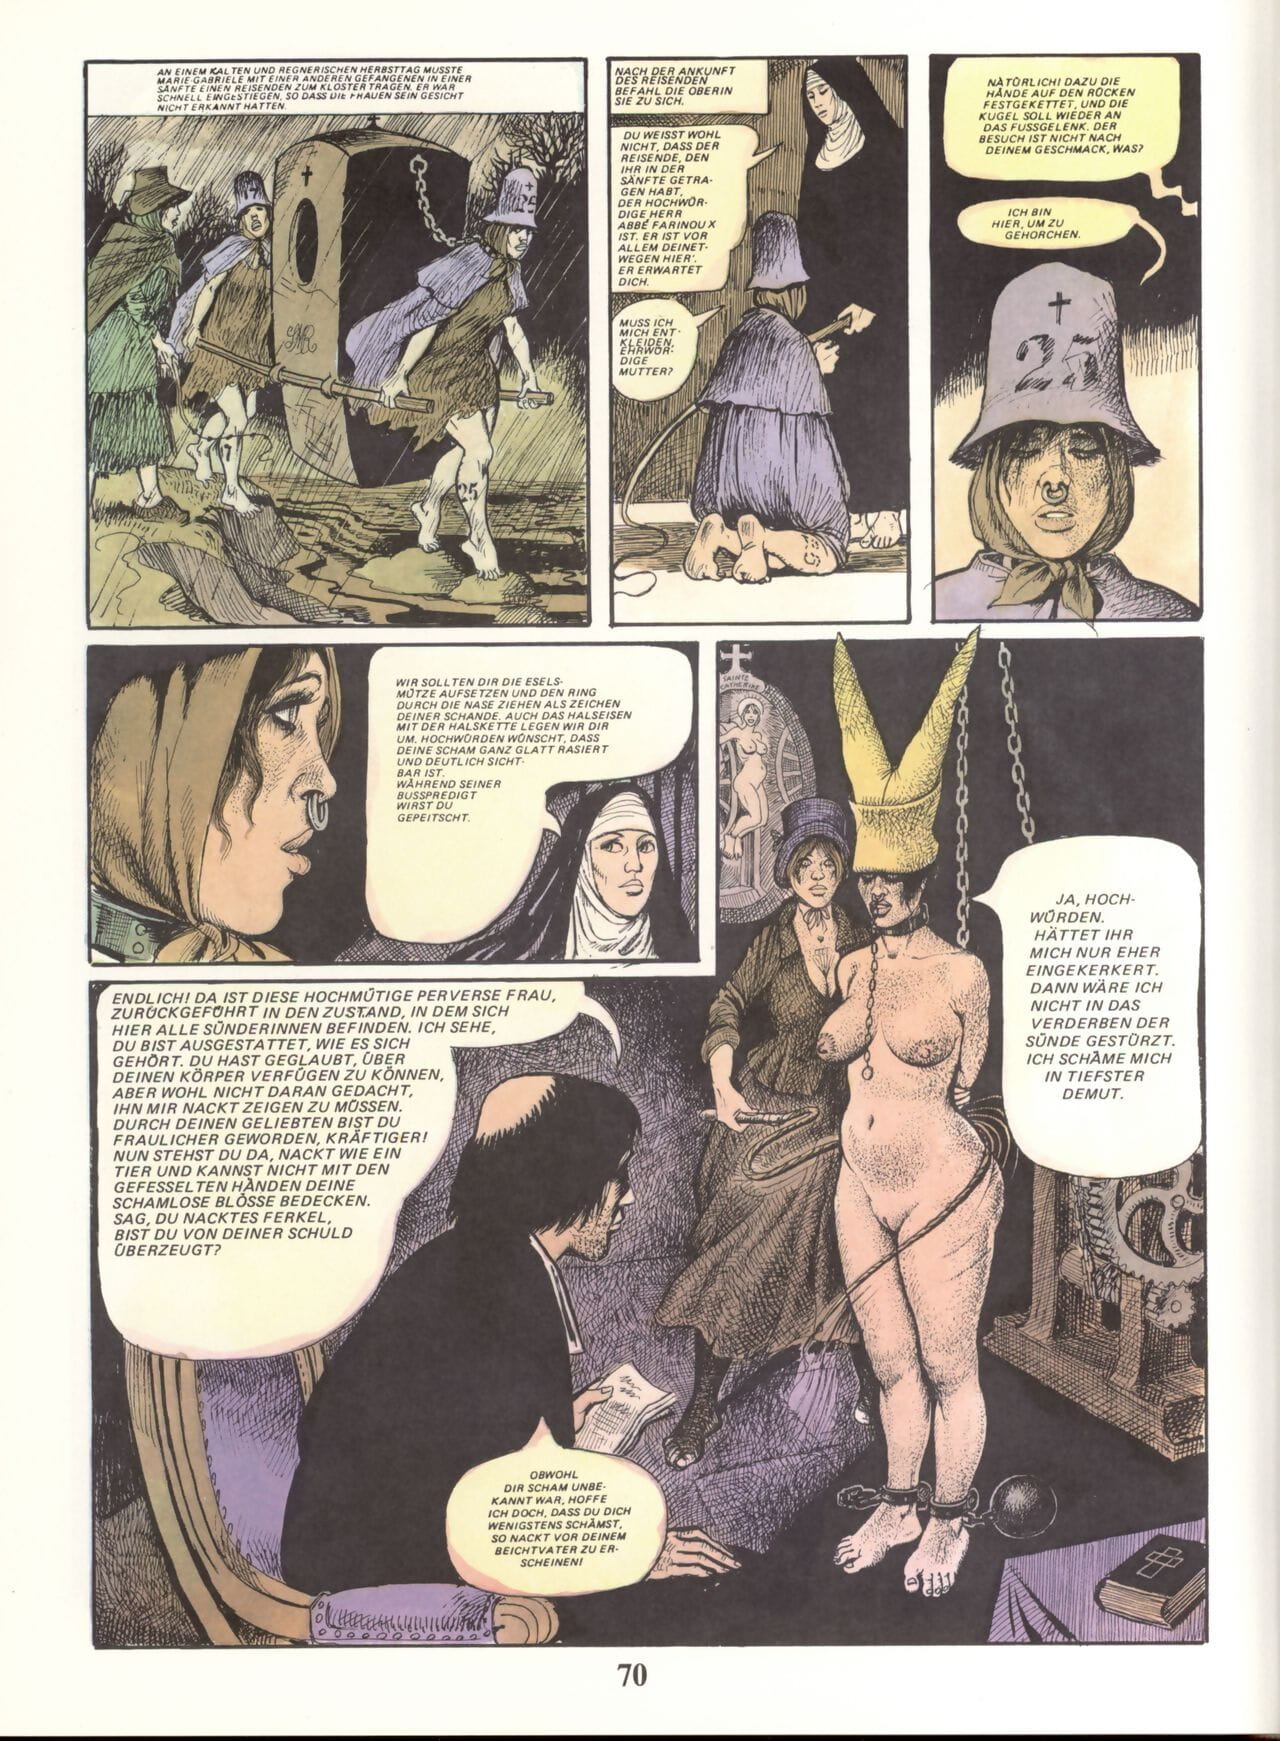 Marie Gabrielle de Saint eutropo #02 parte 4 page 1